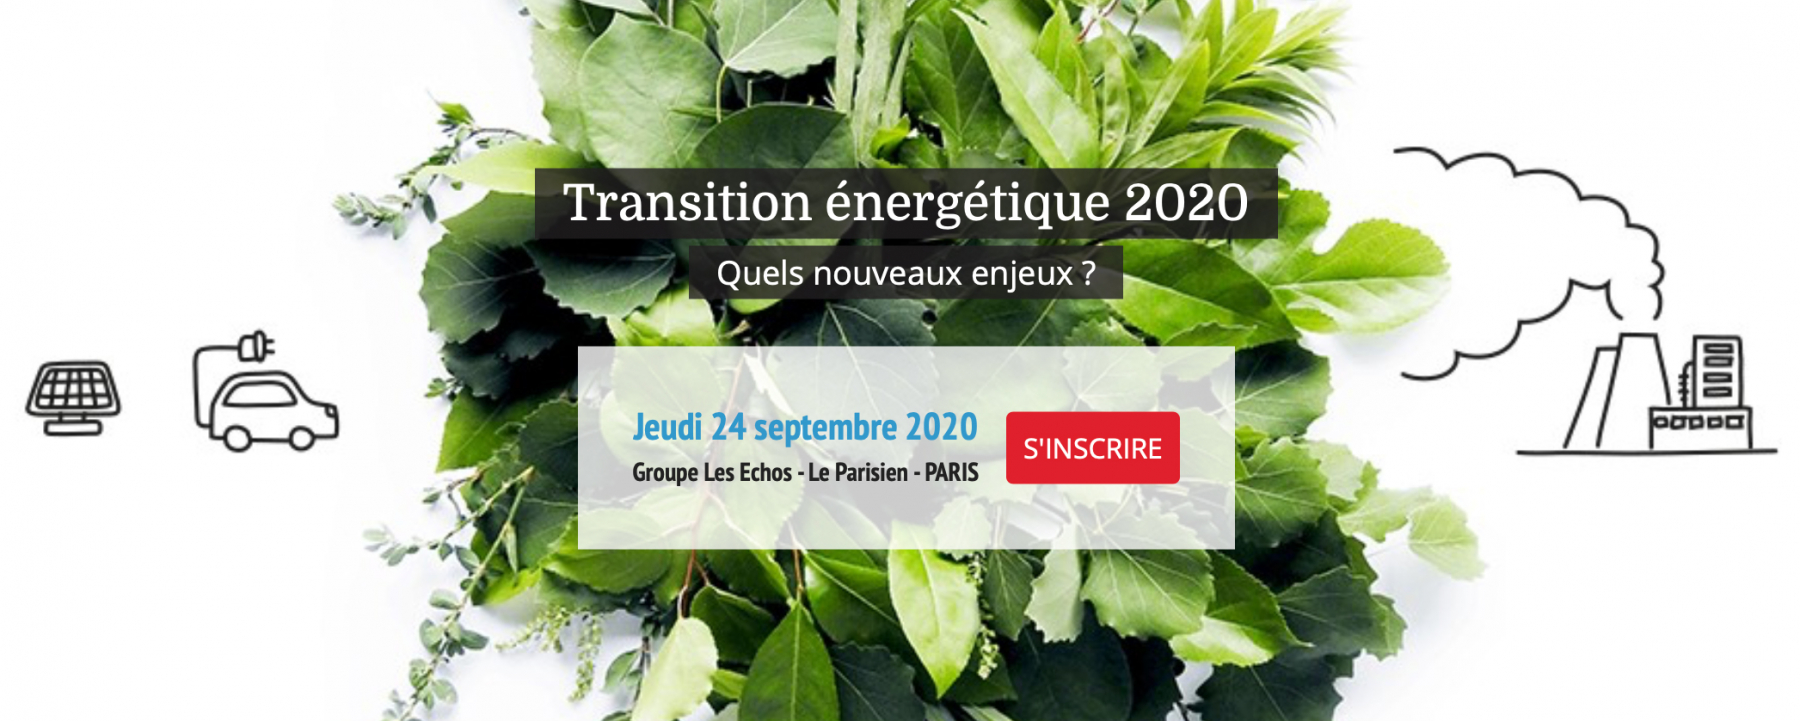 Transition énergétique 2020, quels nouveaux enjeux ?, conférence organisée par Les Echos le 24 septembre 